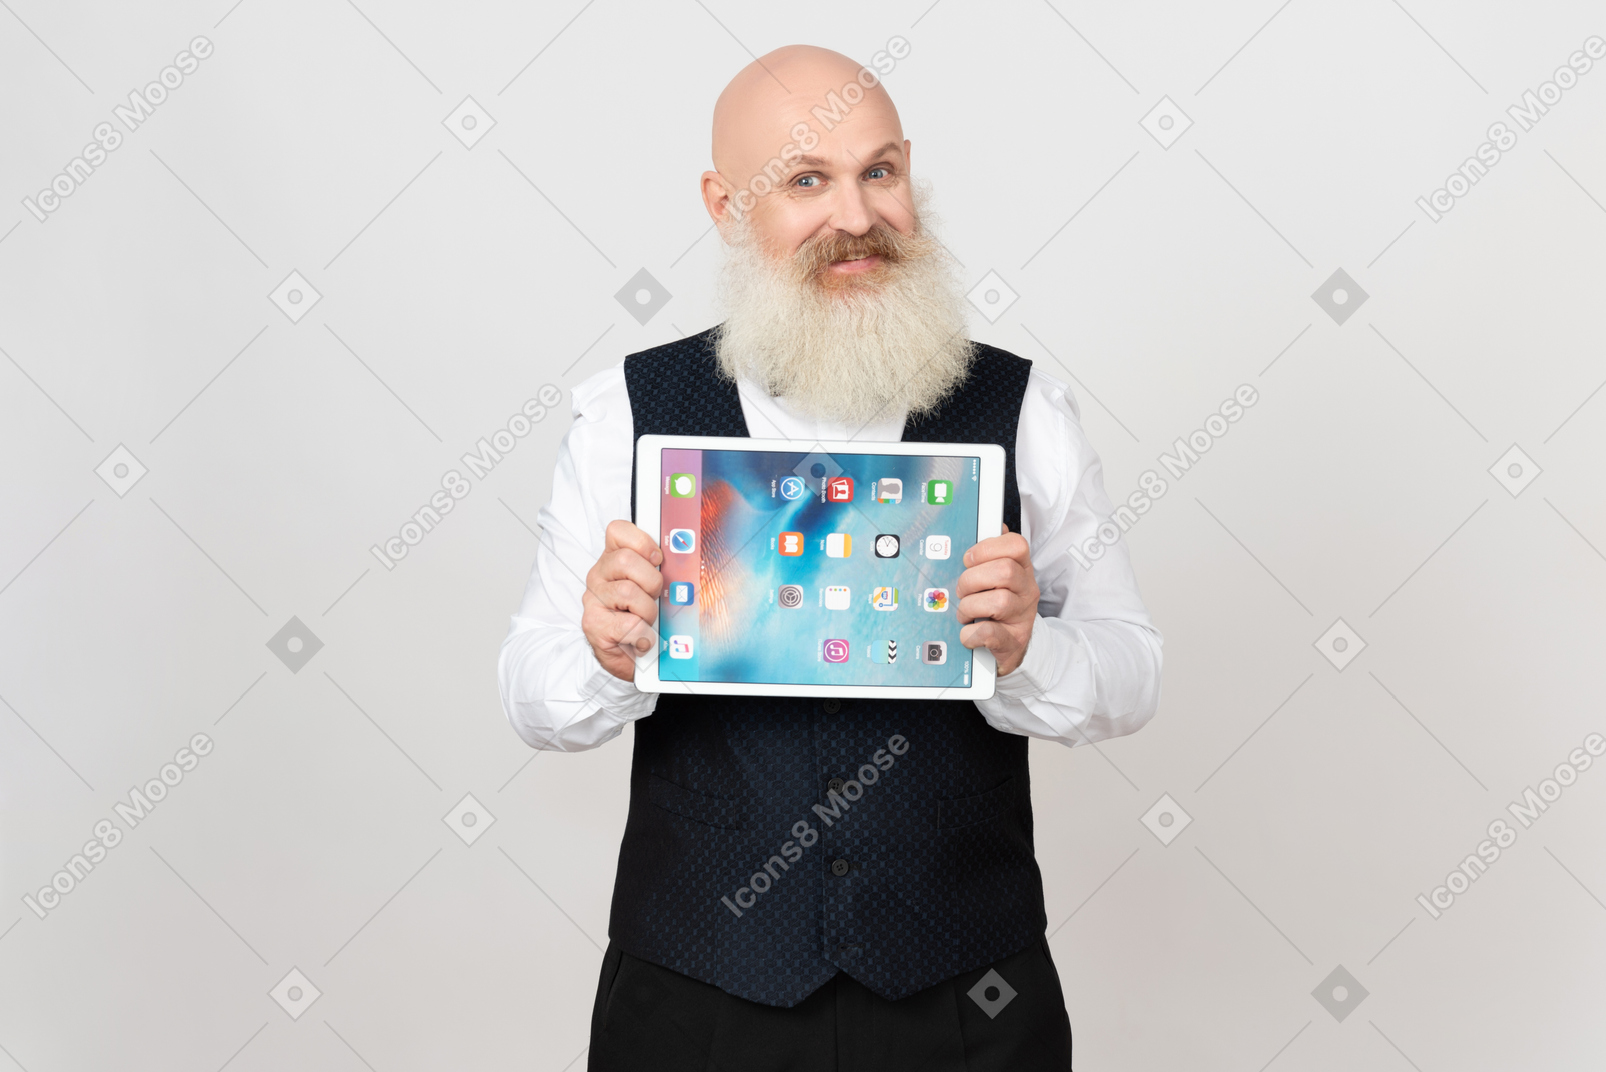 Sonriente hombre de edad sosteniendo ipad con ambas manos